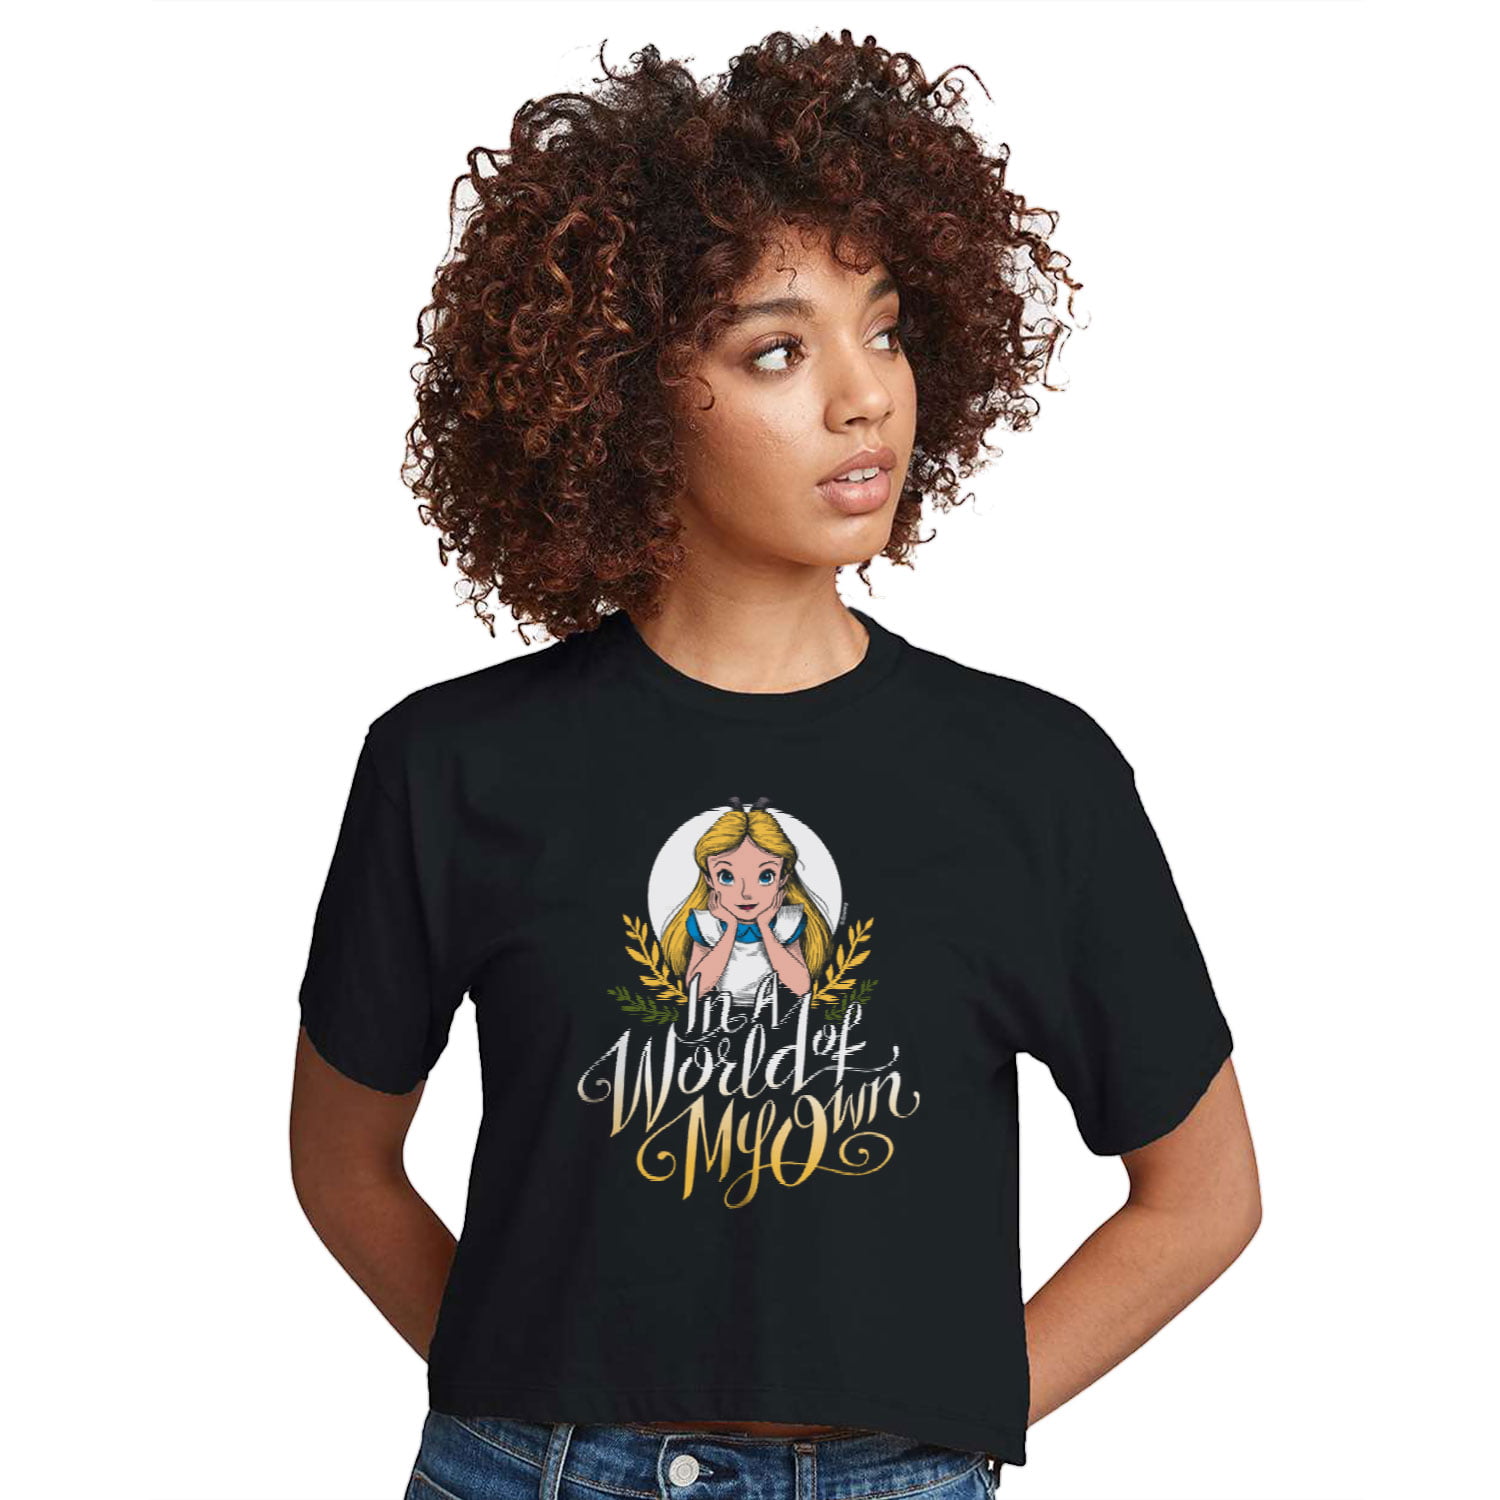 Alice T-shirts in Wonderland